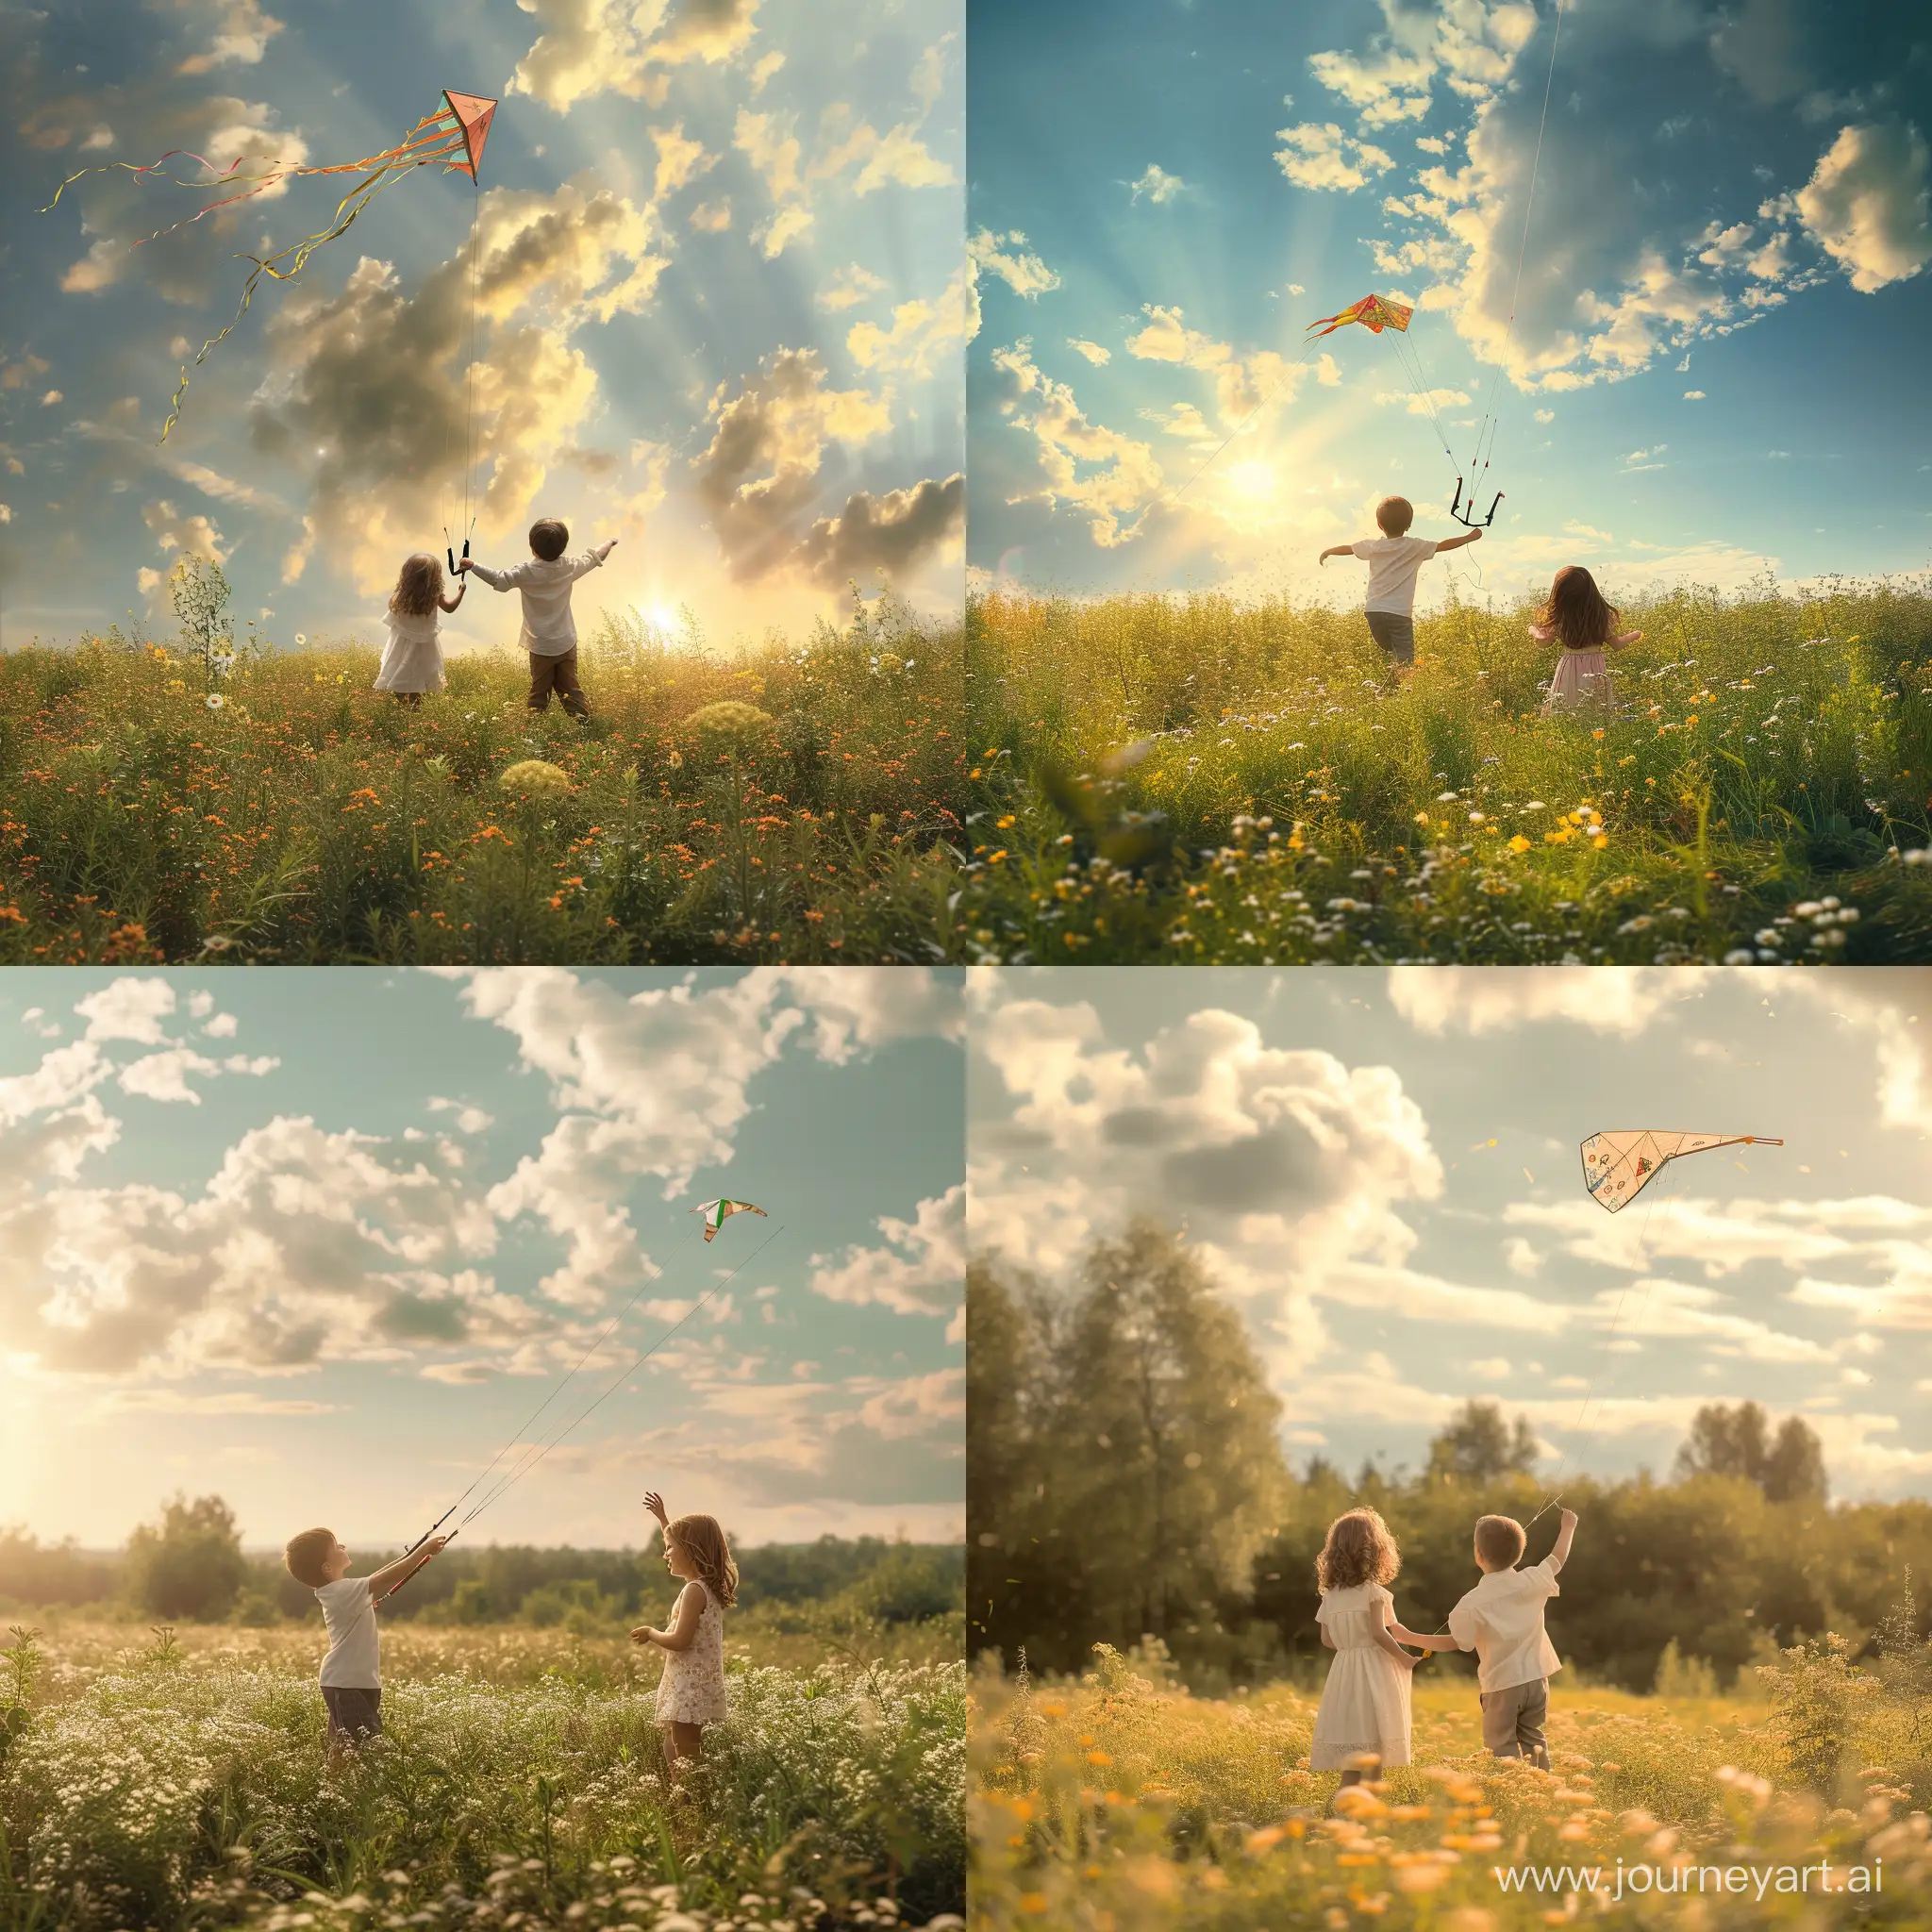 Мальчик с девочкой запускают воздушного змея, летний солнечный день на цветущем лугу, фотография, гиперреализм, высокое разрешение